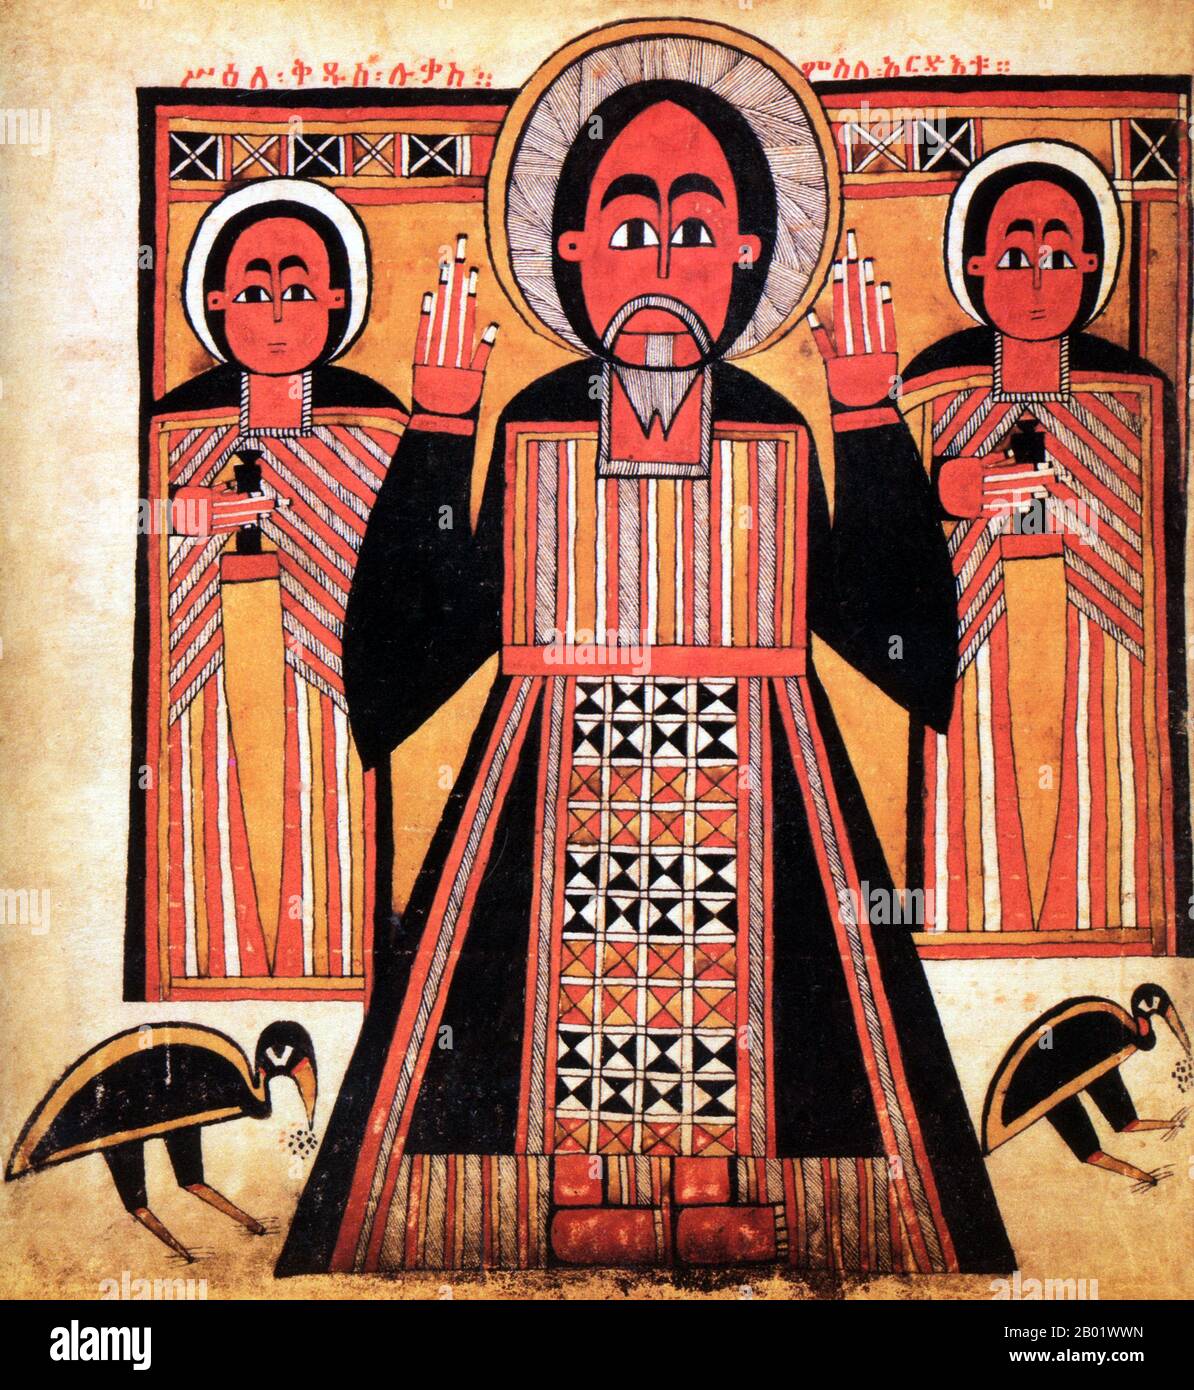 Äthiopien: Der heilige Lukas der Evangelist, begleitet von zwei Jüngern. Pergamentmalerei Anfang des 17. Jahrhunderts. Das Christentum in Äthiopien stammt aus dem 1. Jahrhundert n. Chr. und diese lange Tradition macht Äthiopien einzigartig unter den afrikanischen Ländern südlich der Sahara. Das Christentum in diesem Land ist in mehrere Gruppen unterteilt. Die größte und älteste ist die Äthiopisch-orthodoxe Tewahedo-Kirche, eine orientalisch-orthodoxe Kirche in Äthiopien, die bis 1959 Teil der koptisch-orthodoxen Kirche war, als sie vom koptisch-orthodoxen Papst von Alexandria und Patriarch von ganz Afrika Kyrill VI. Einen eigenen Patriarchen erhielt Stockfoto